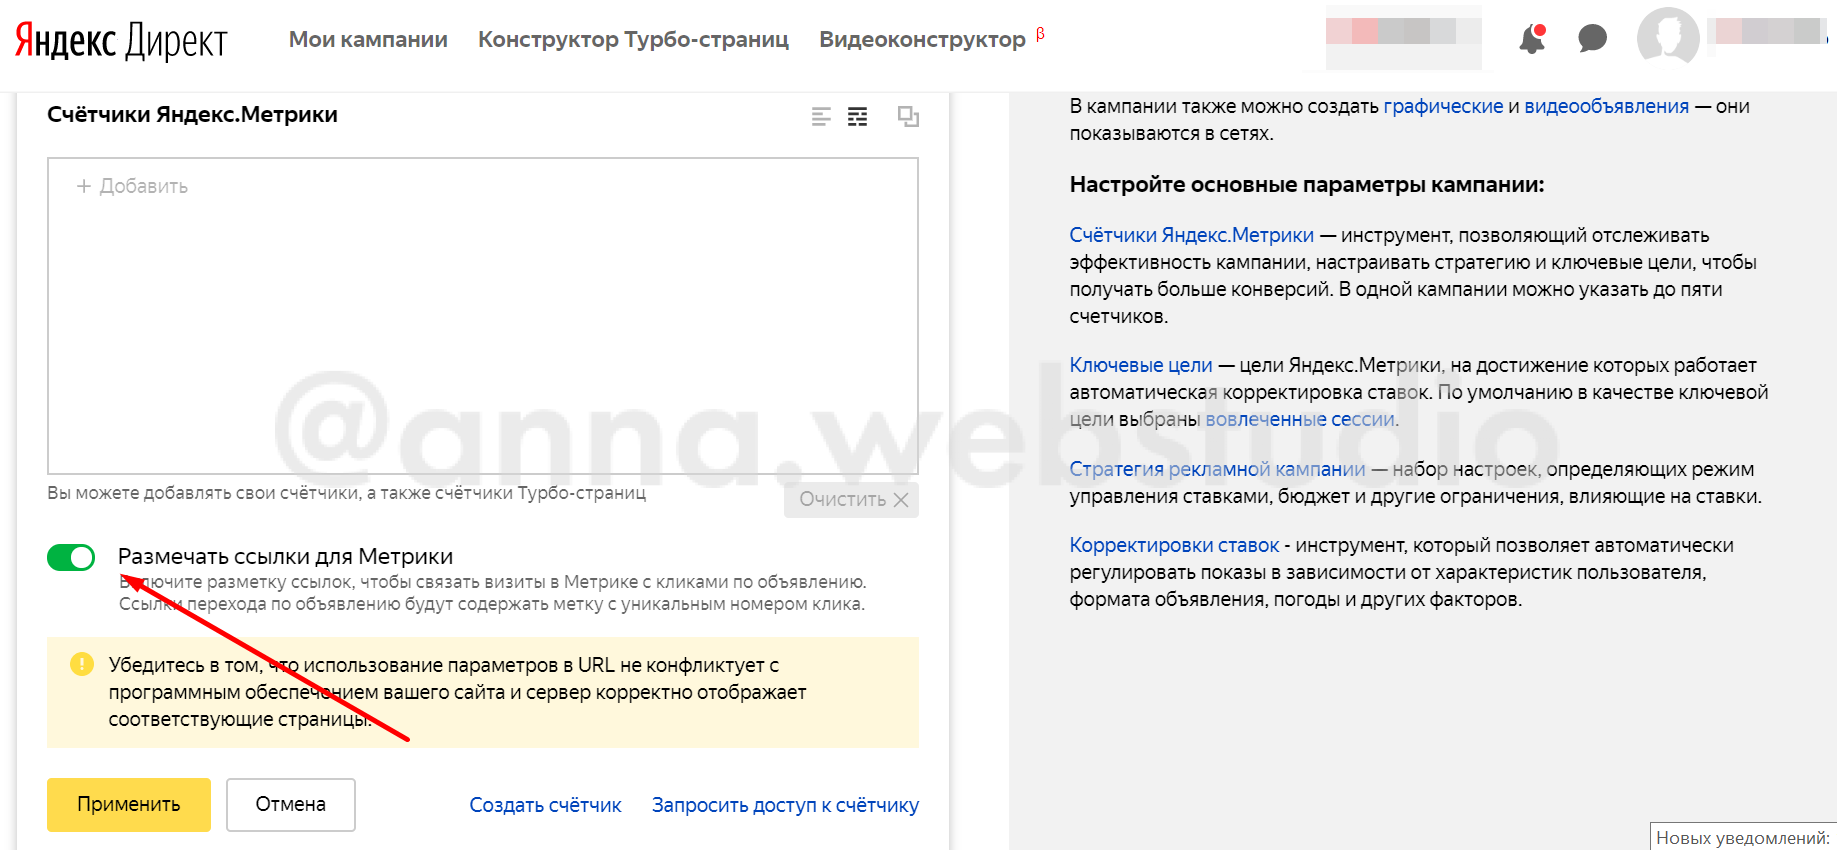 Включенная разметка yclid в Яндекс.Директе